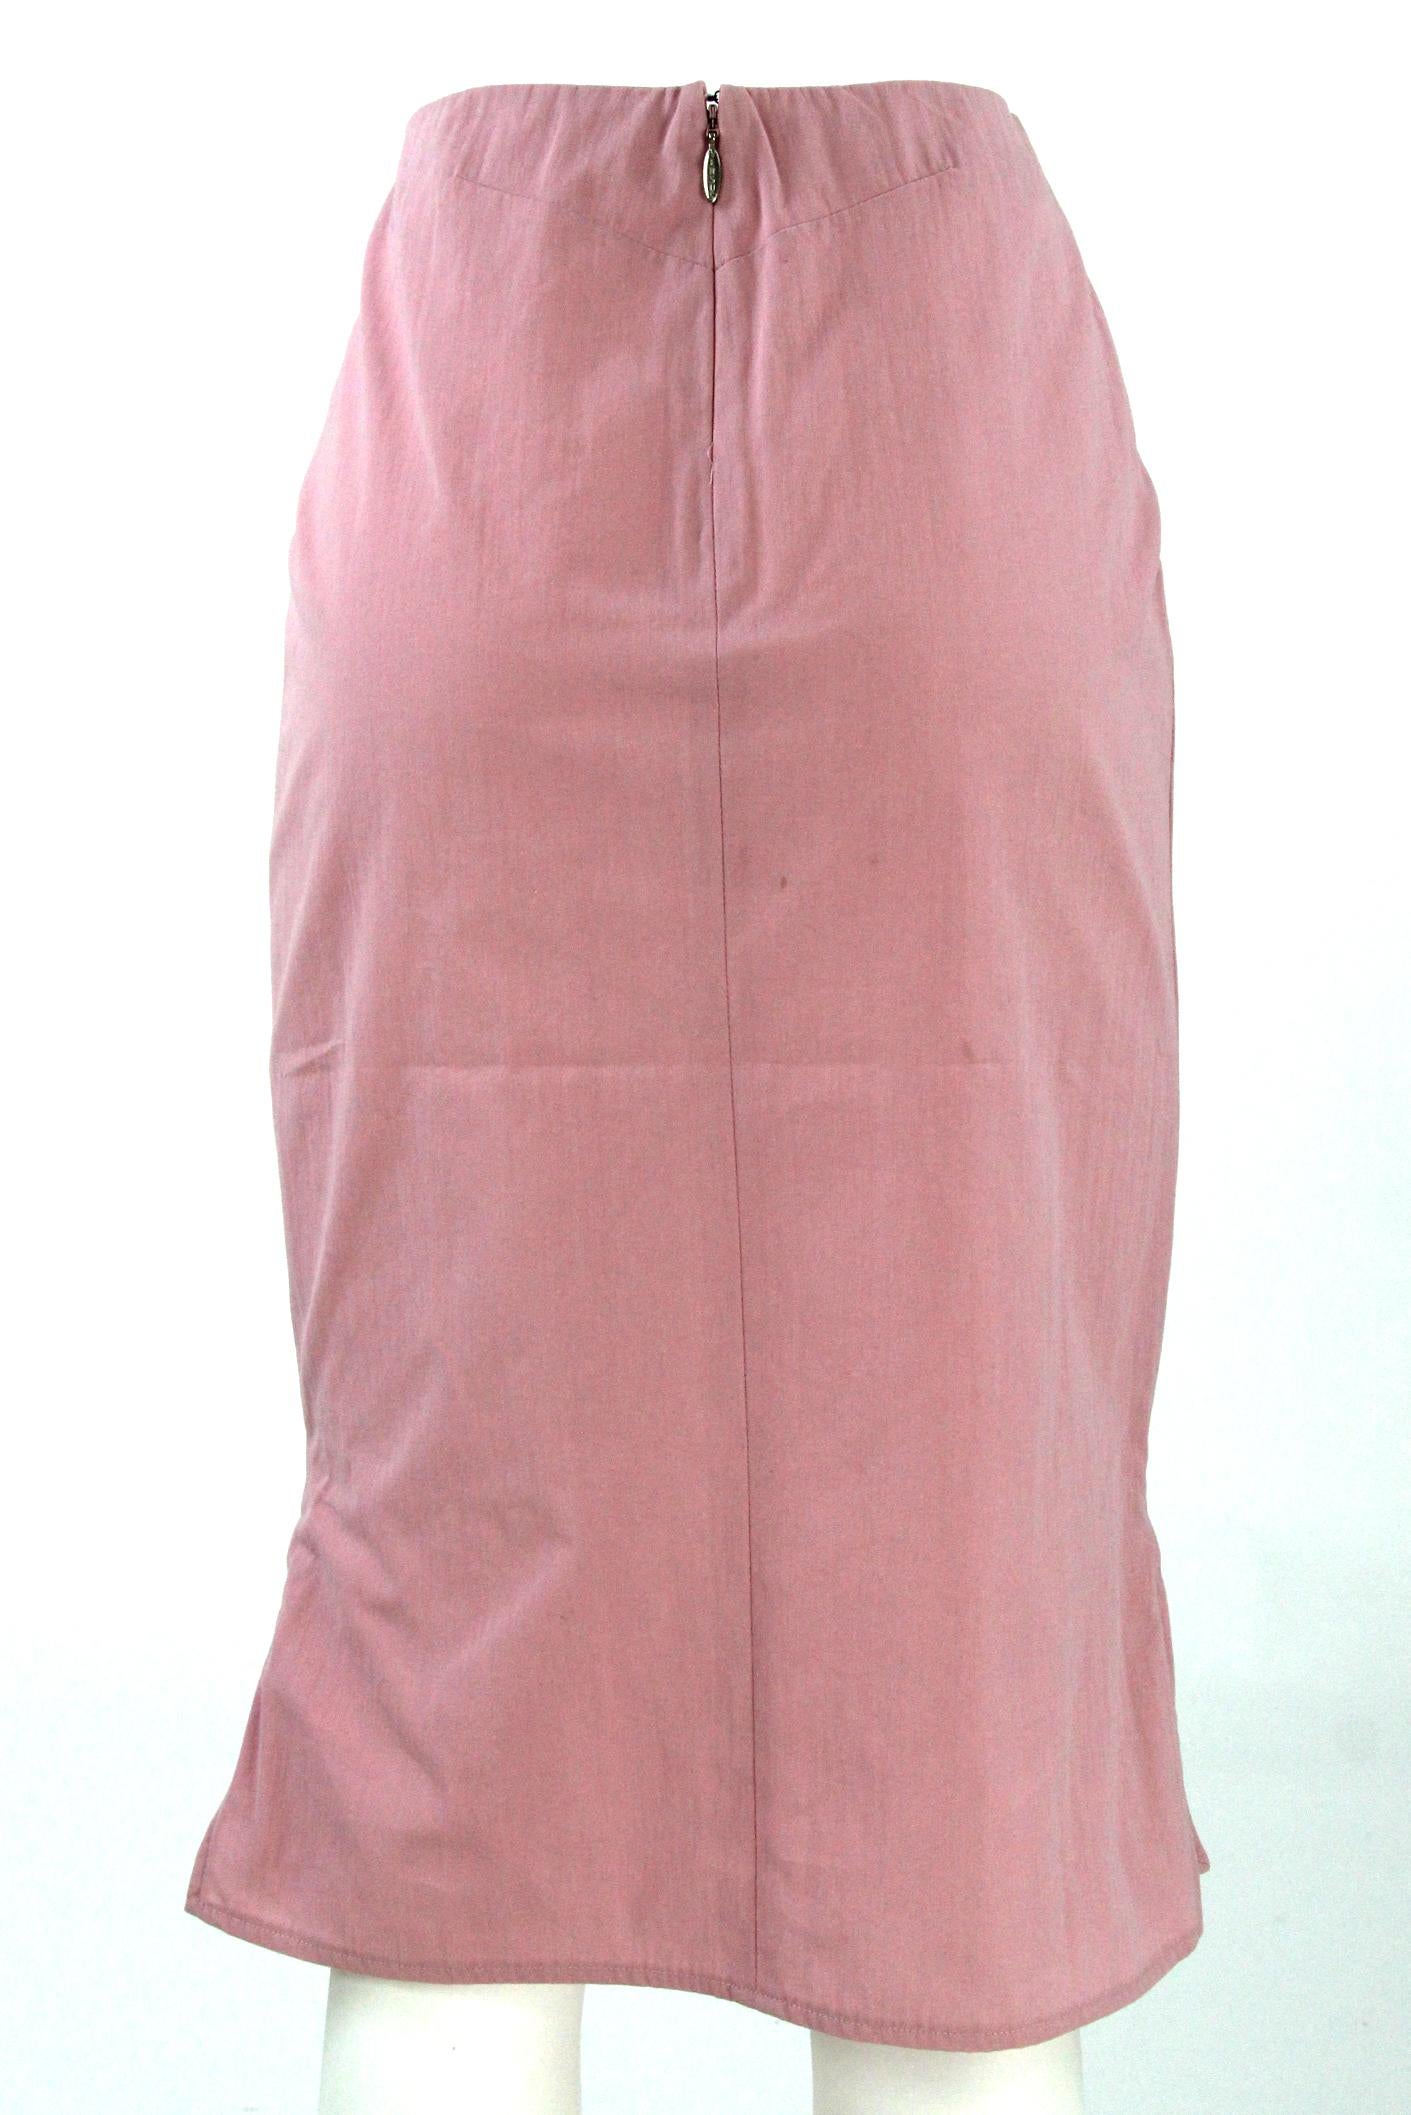 pink 2000s skirt